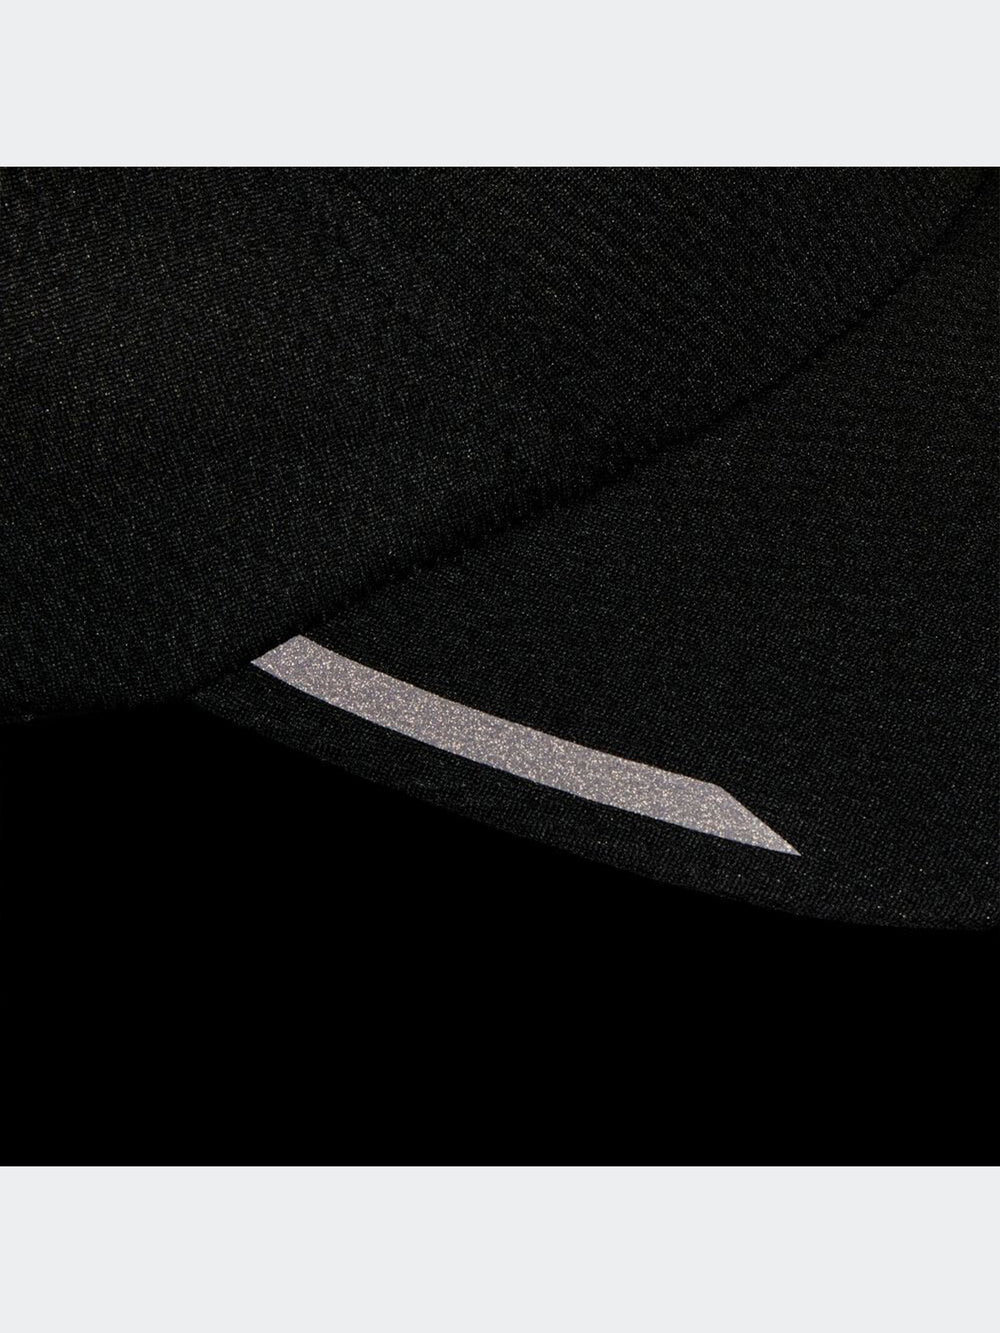 [adidas] ランニング AR メッシュキャップ / アディダス 男女兼用 帽子 紫外線対策 日除け スポーツ 23SS HT4815 [A] 20_1 - Puravida!プラヴィダ ヨガウェア ヨガマット